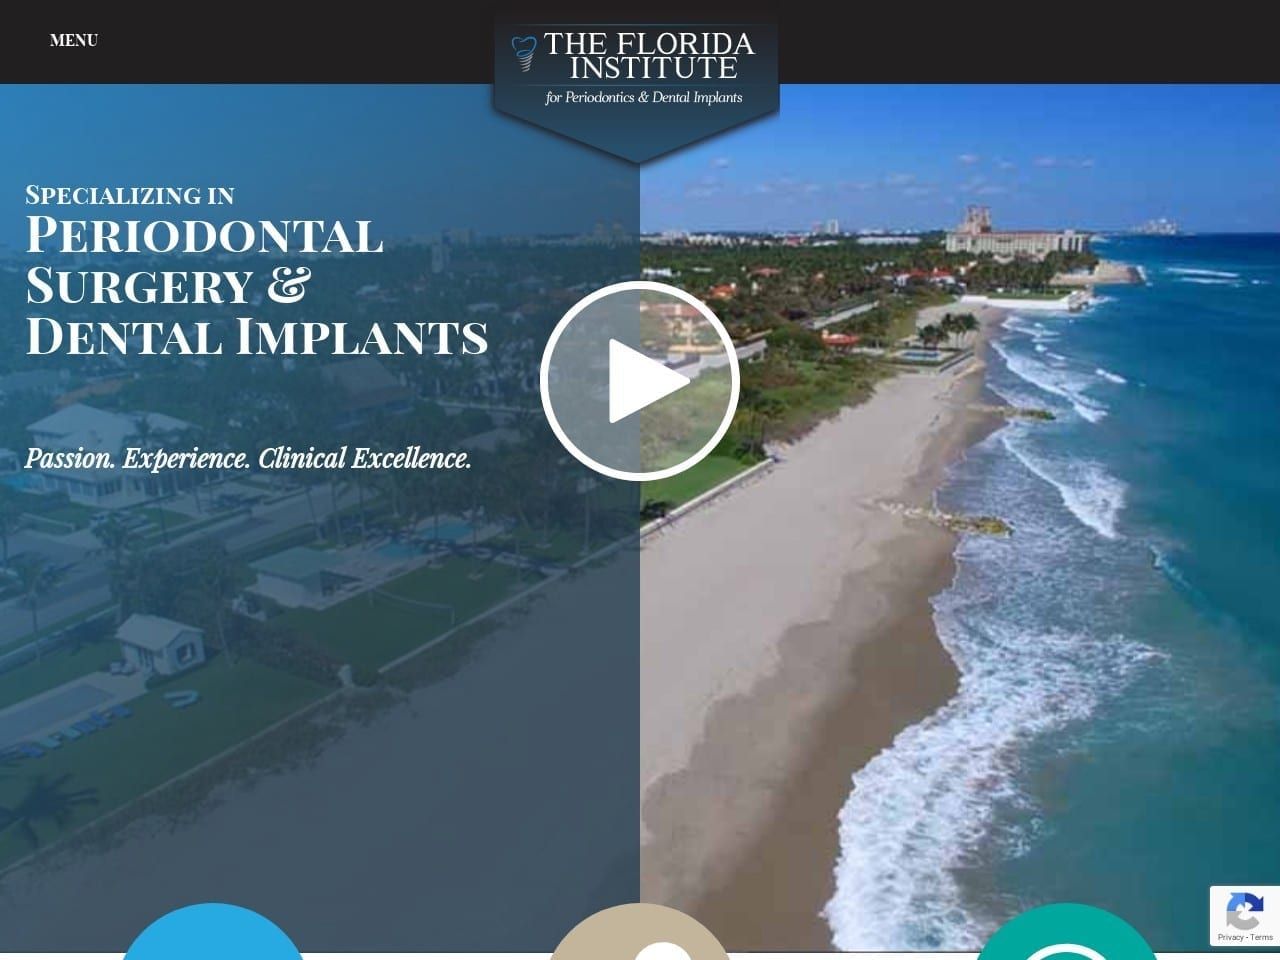 South Florida Periodontics Dentist Website Screenshot from perio-implant.com